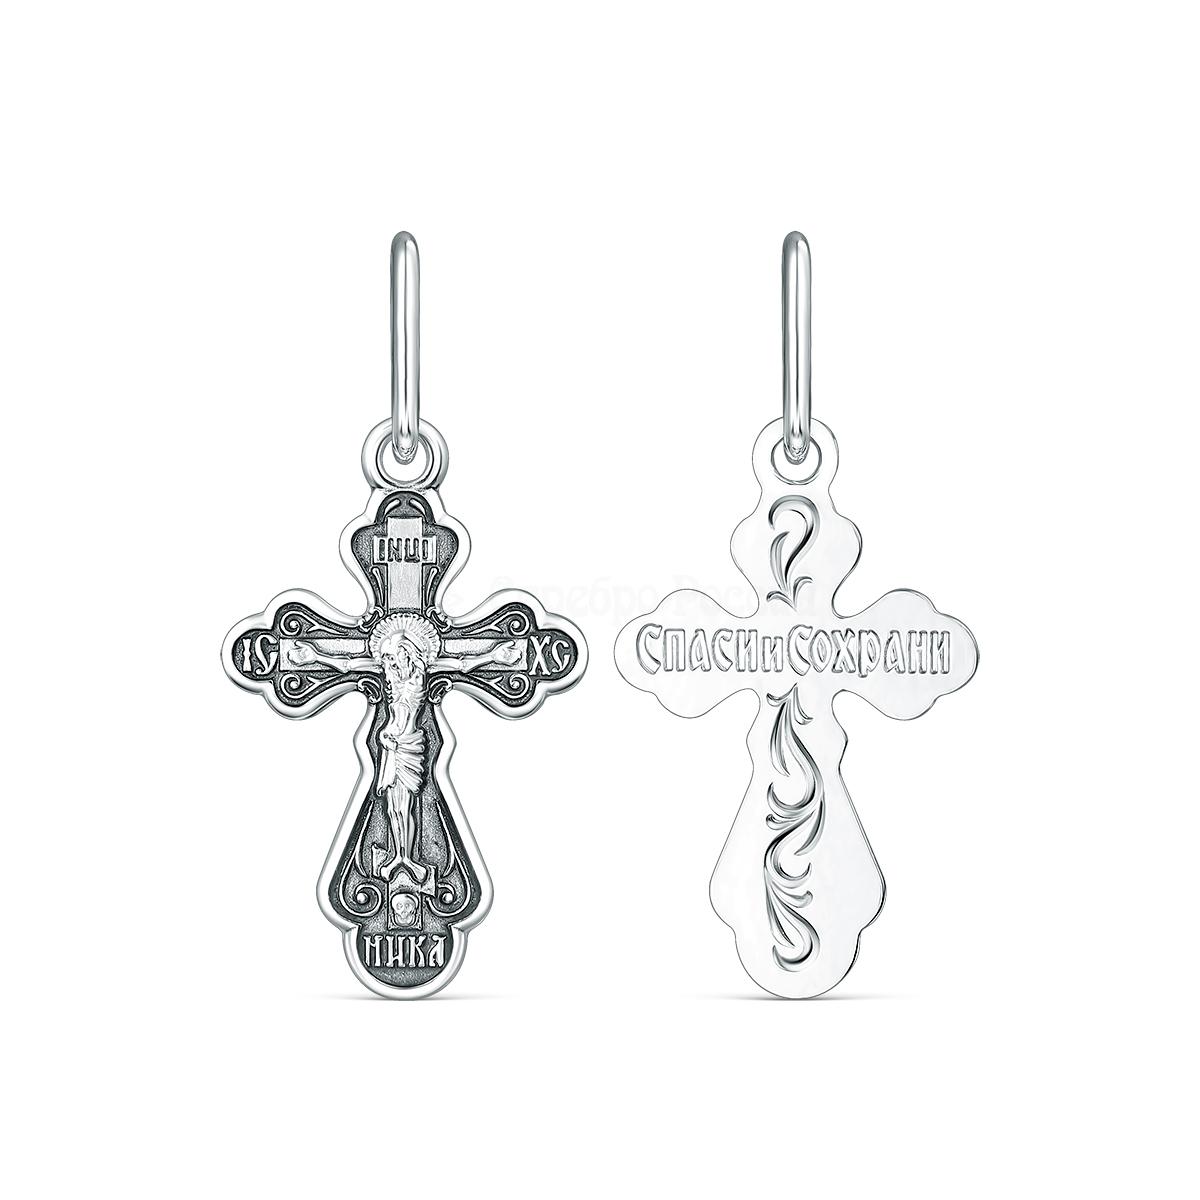 Крест православный из чернёного серебра - Спаси и сохрани 2,6 см 1-180-3.55